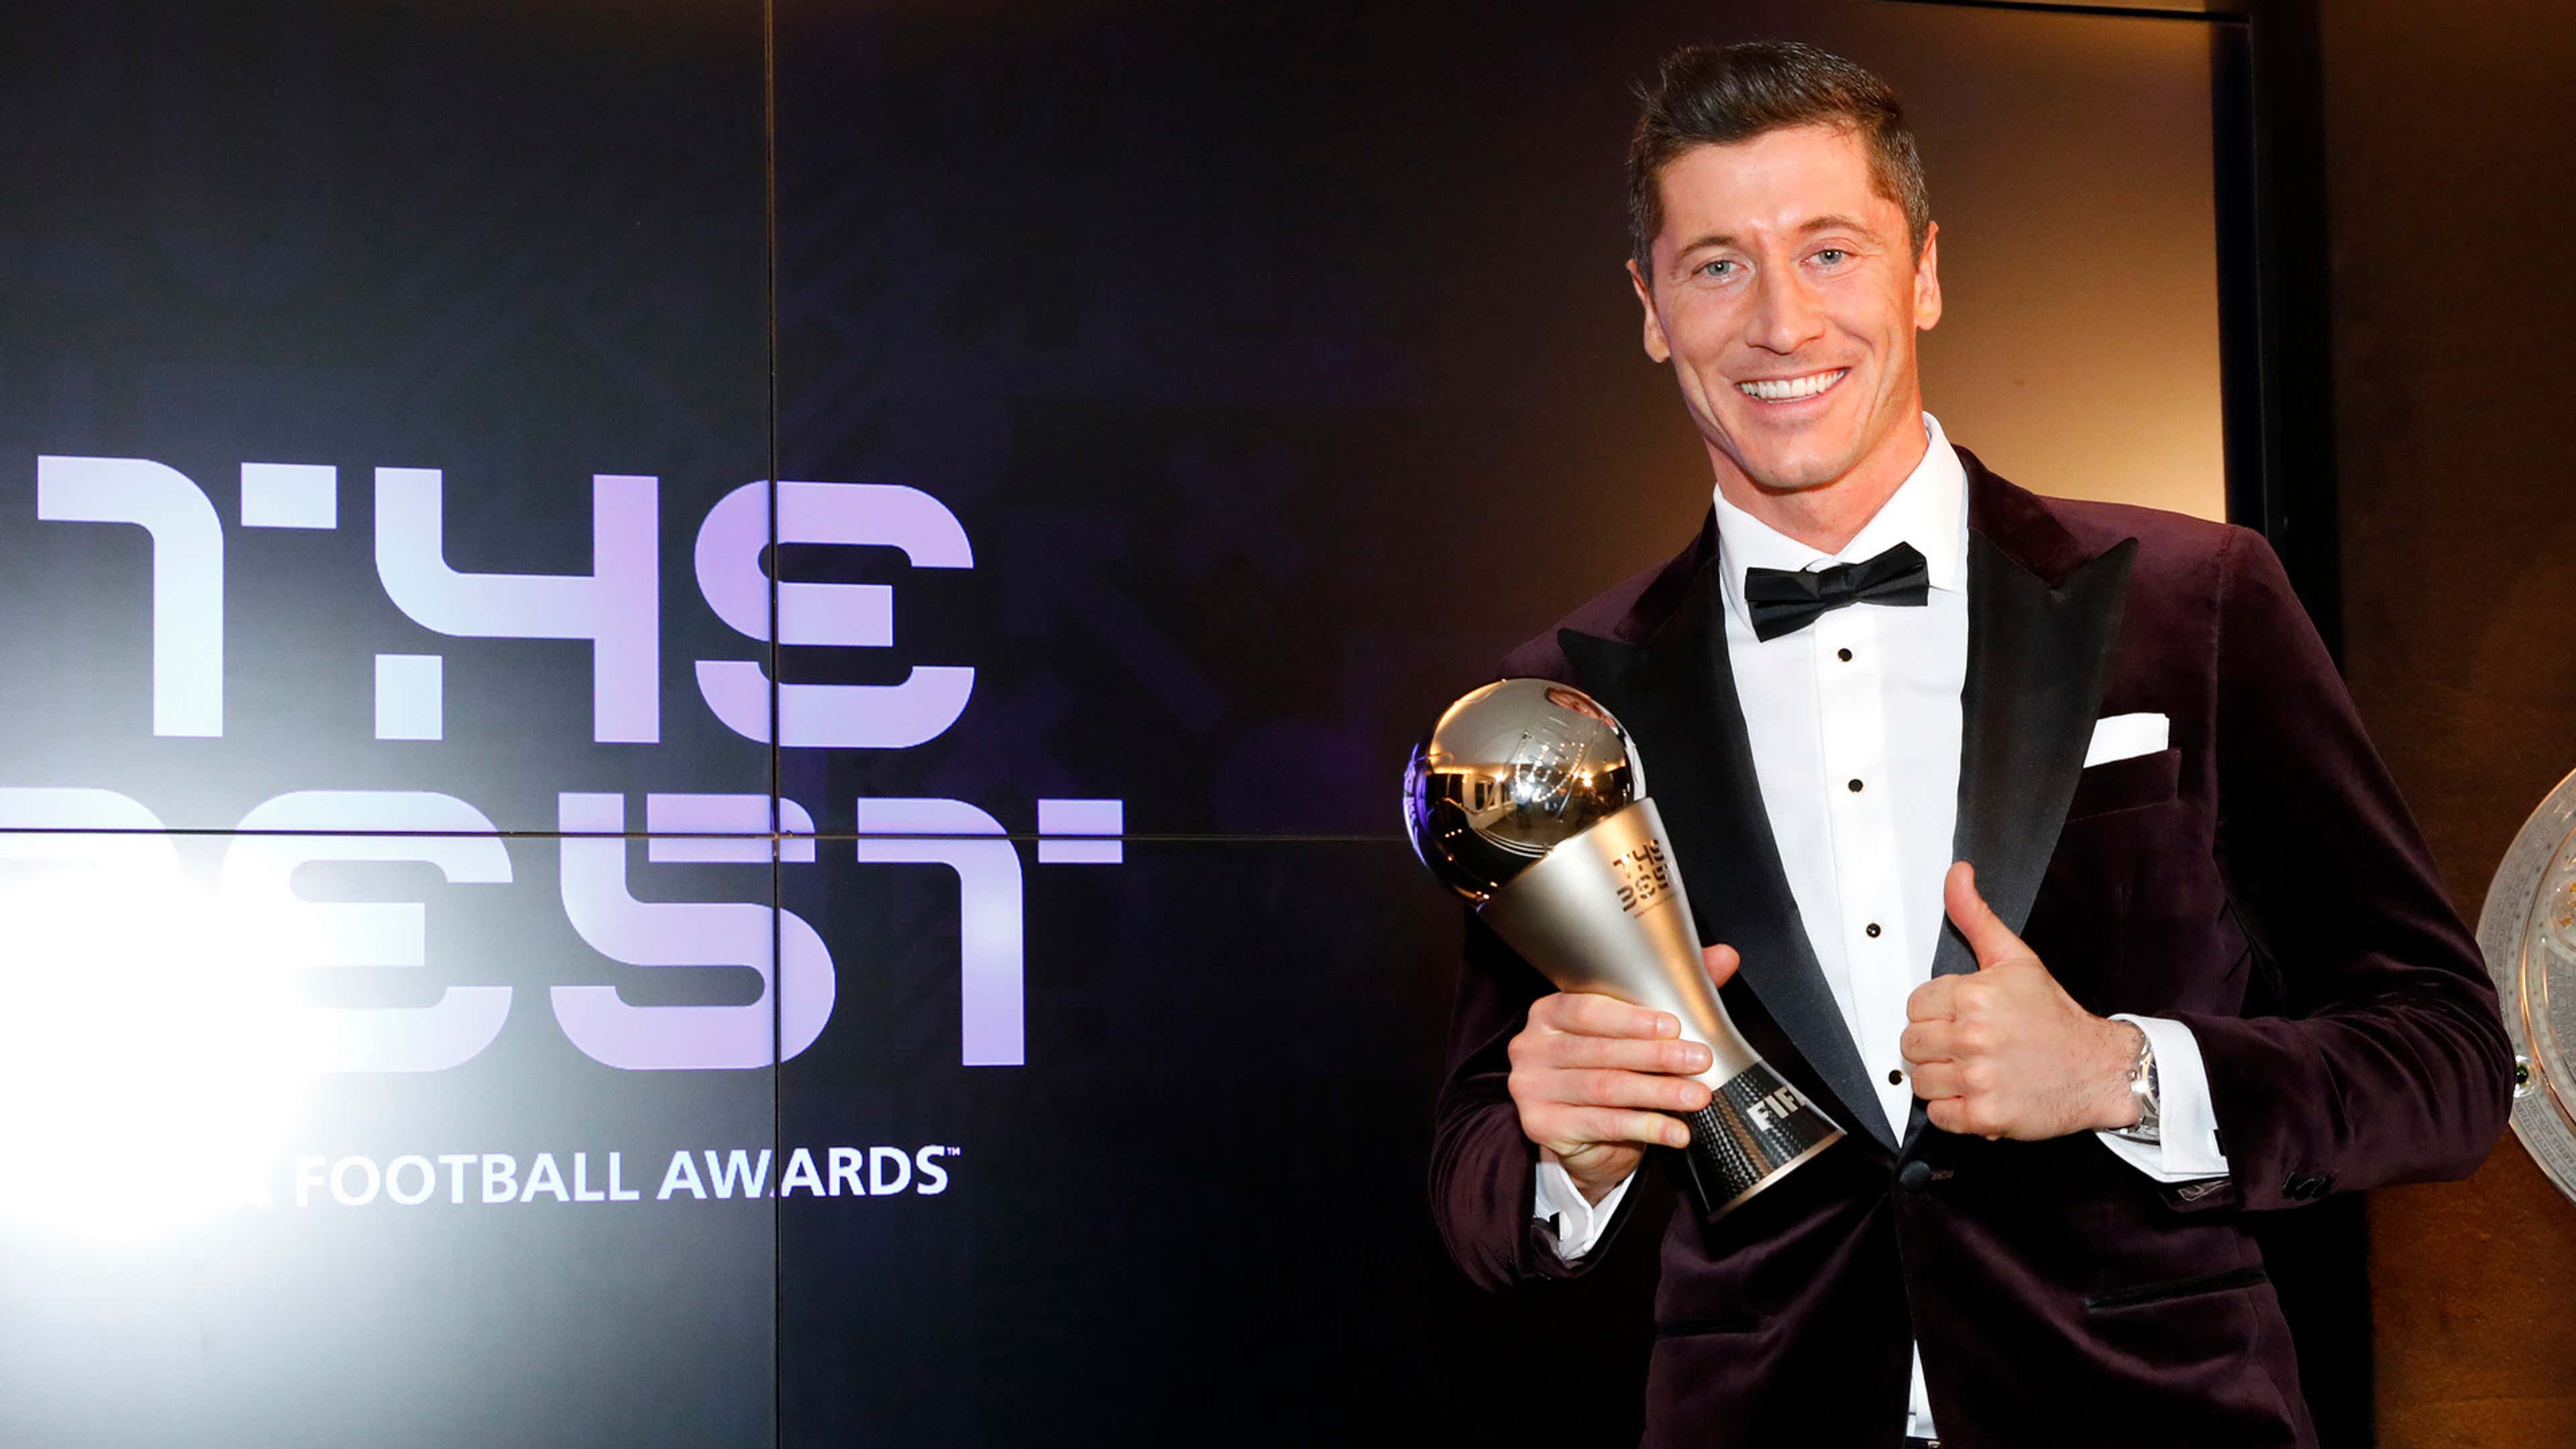 Fifa entrega prêmio de melhor jogador do mundo nesta segunda; veja